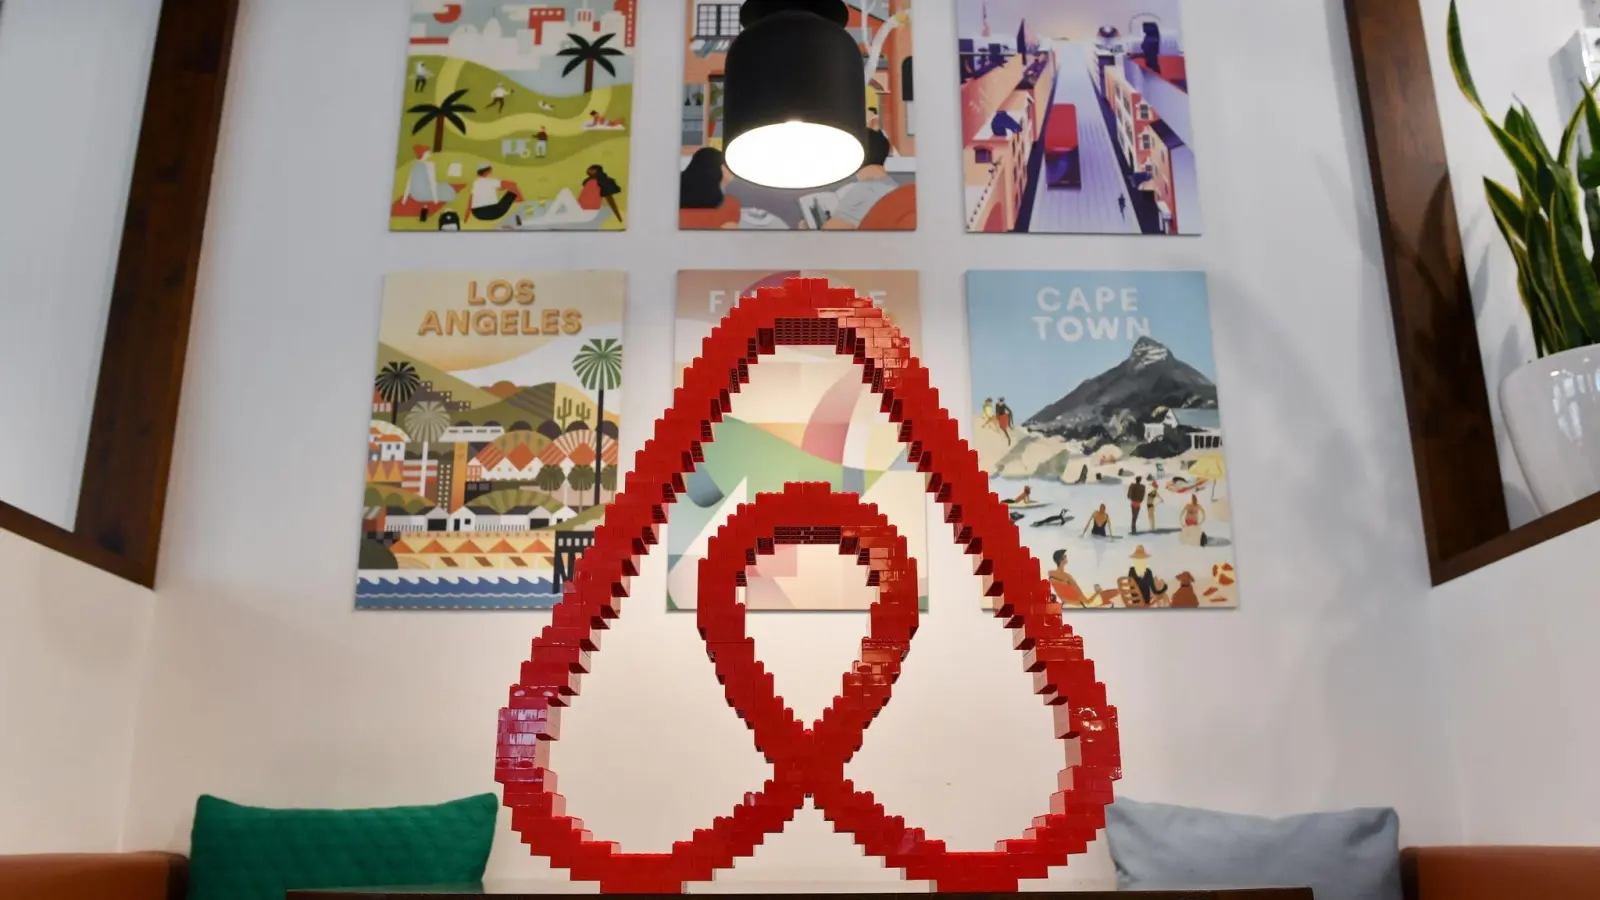 Mit der neuen Funktion „Verbundene Aufenthalte“ schlägt Airbnb eine Kombination aus zwei Unterkünften für eine Reise vor. (Foto: Jens Kalaene/dpa-Zentralbild/dpa)